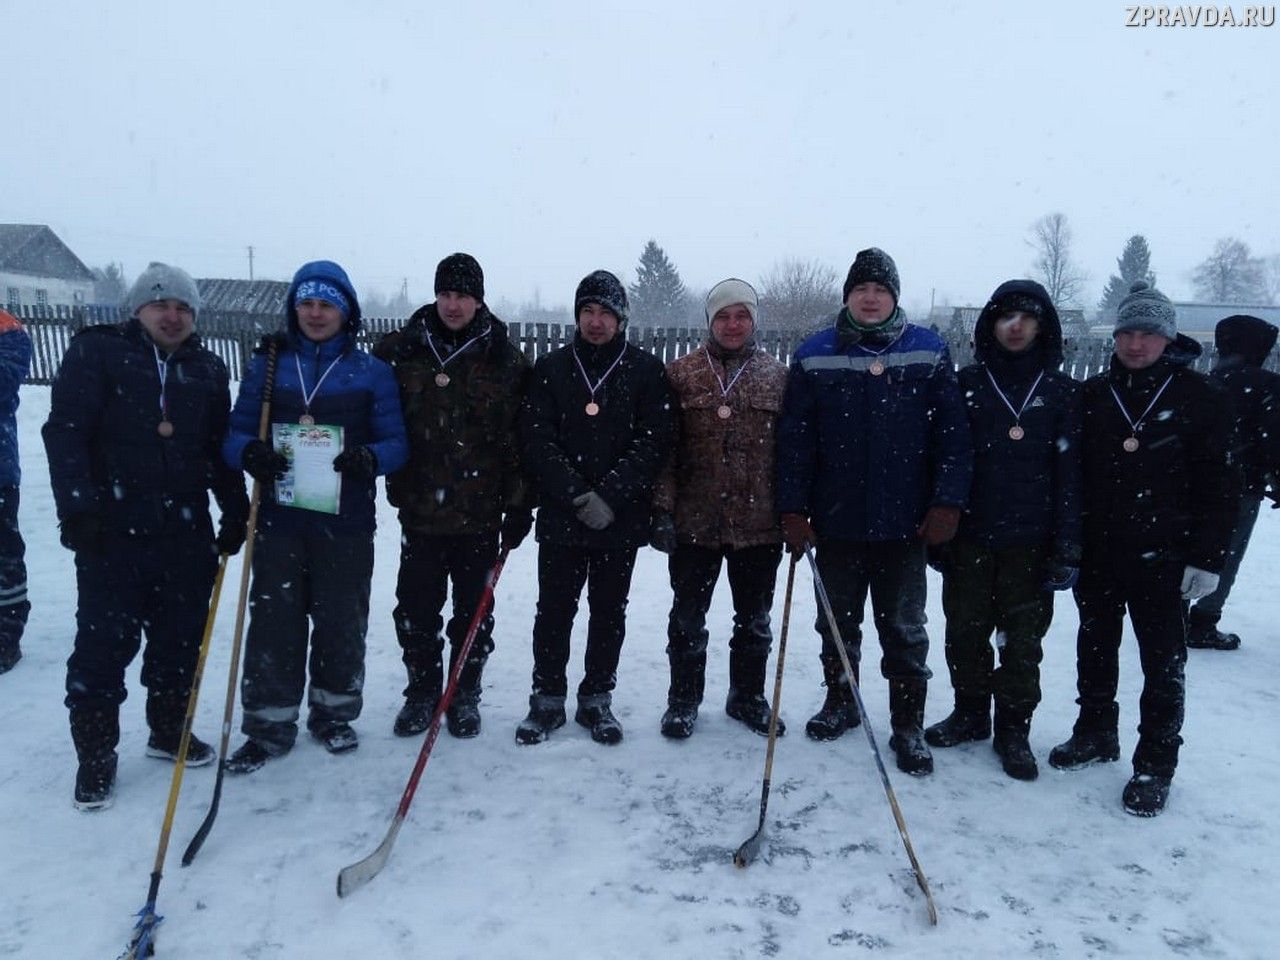 В Кугушевском сельском поселении 23 февраля отметили традиционно турниром по хоккею с мячом